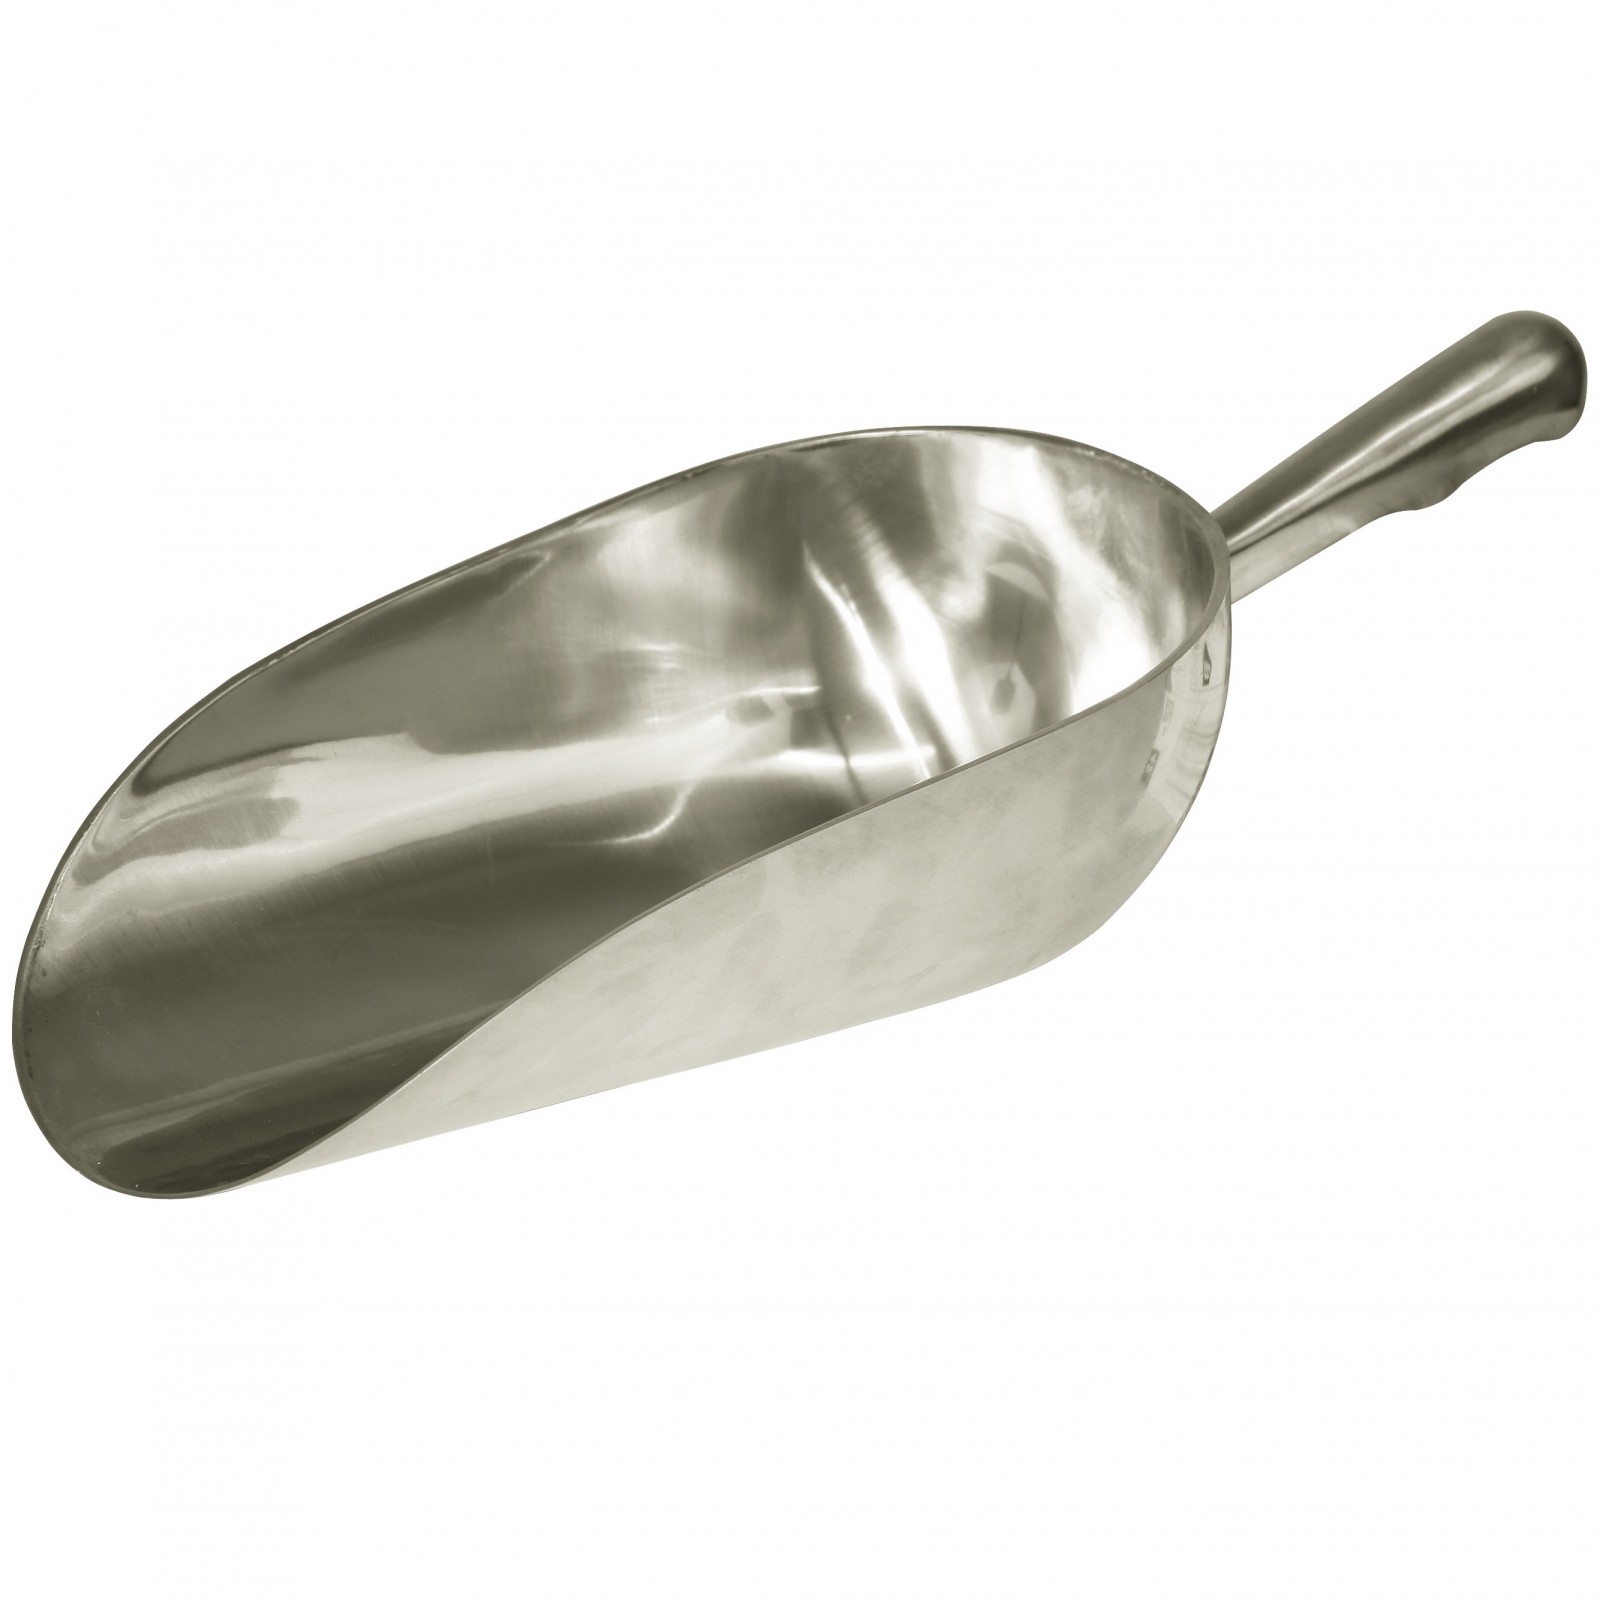 Feed scoop aluminium round